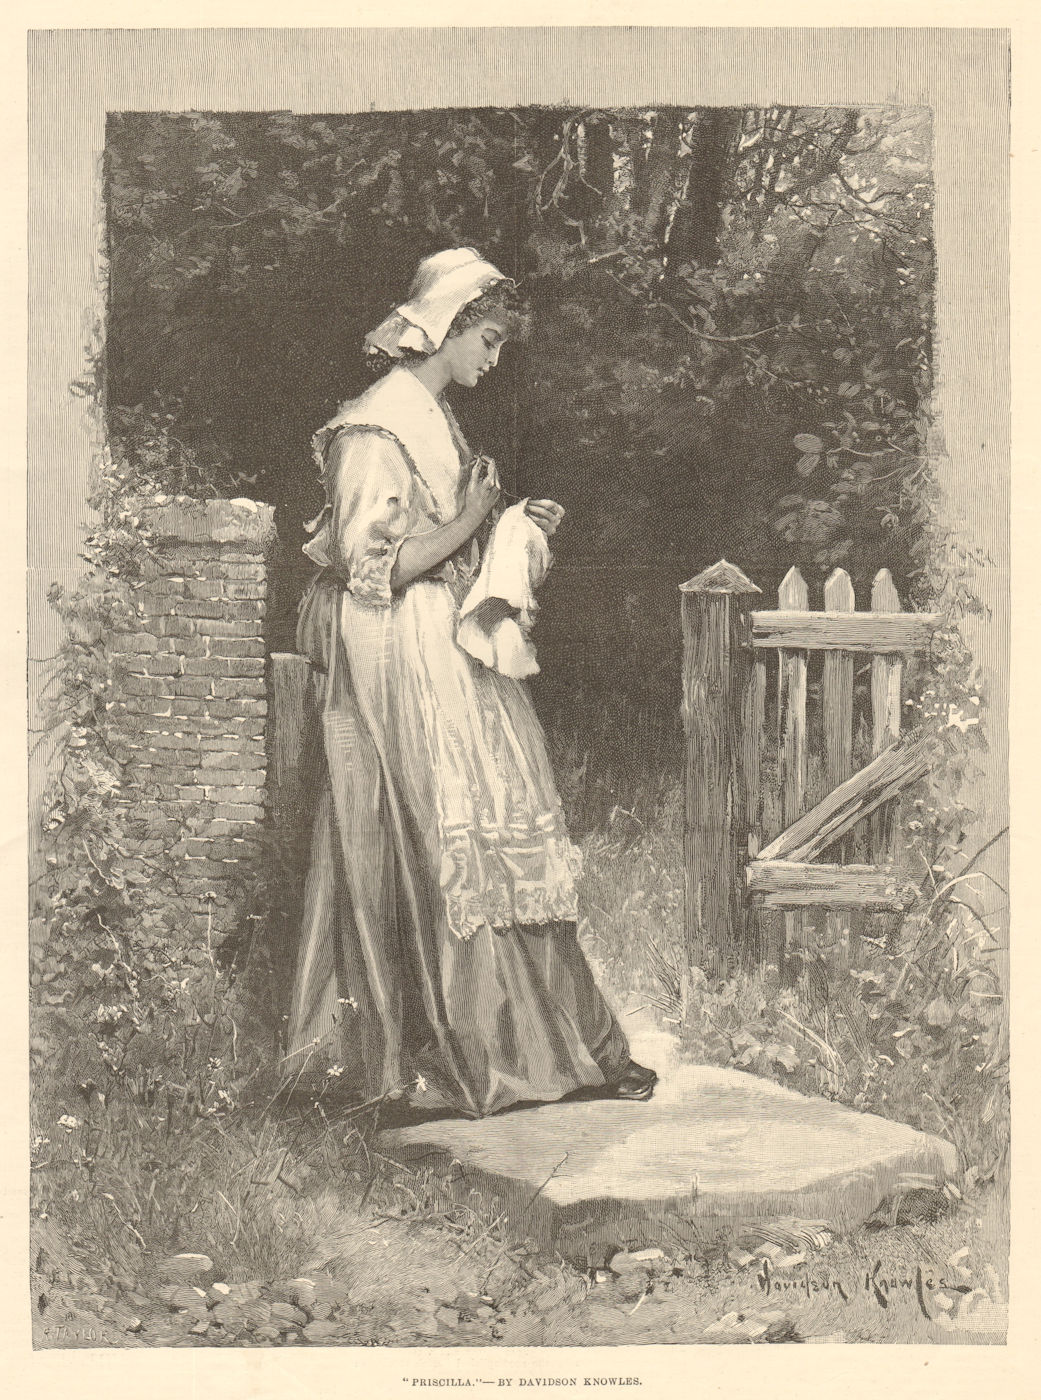 "Priscilla", by Davidson Knowles. Pretty Ladies. Fine arts 1891 old print